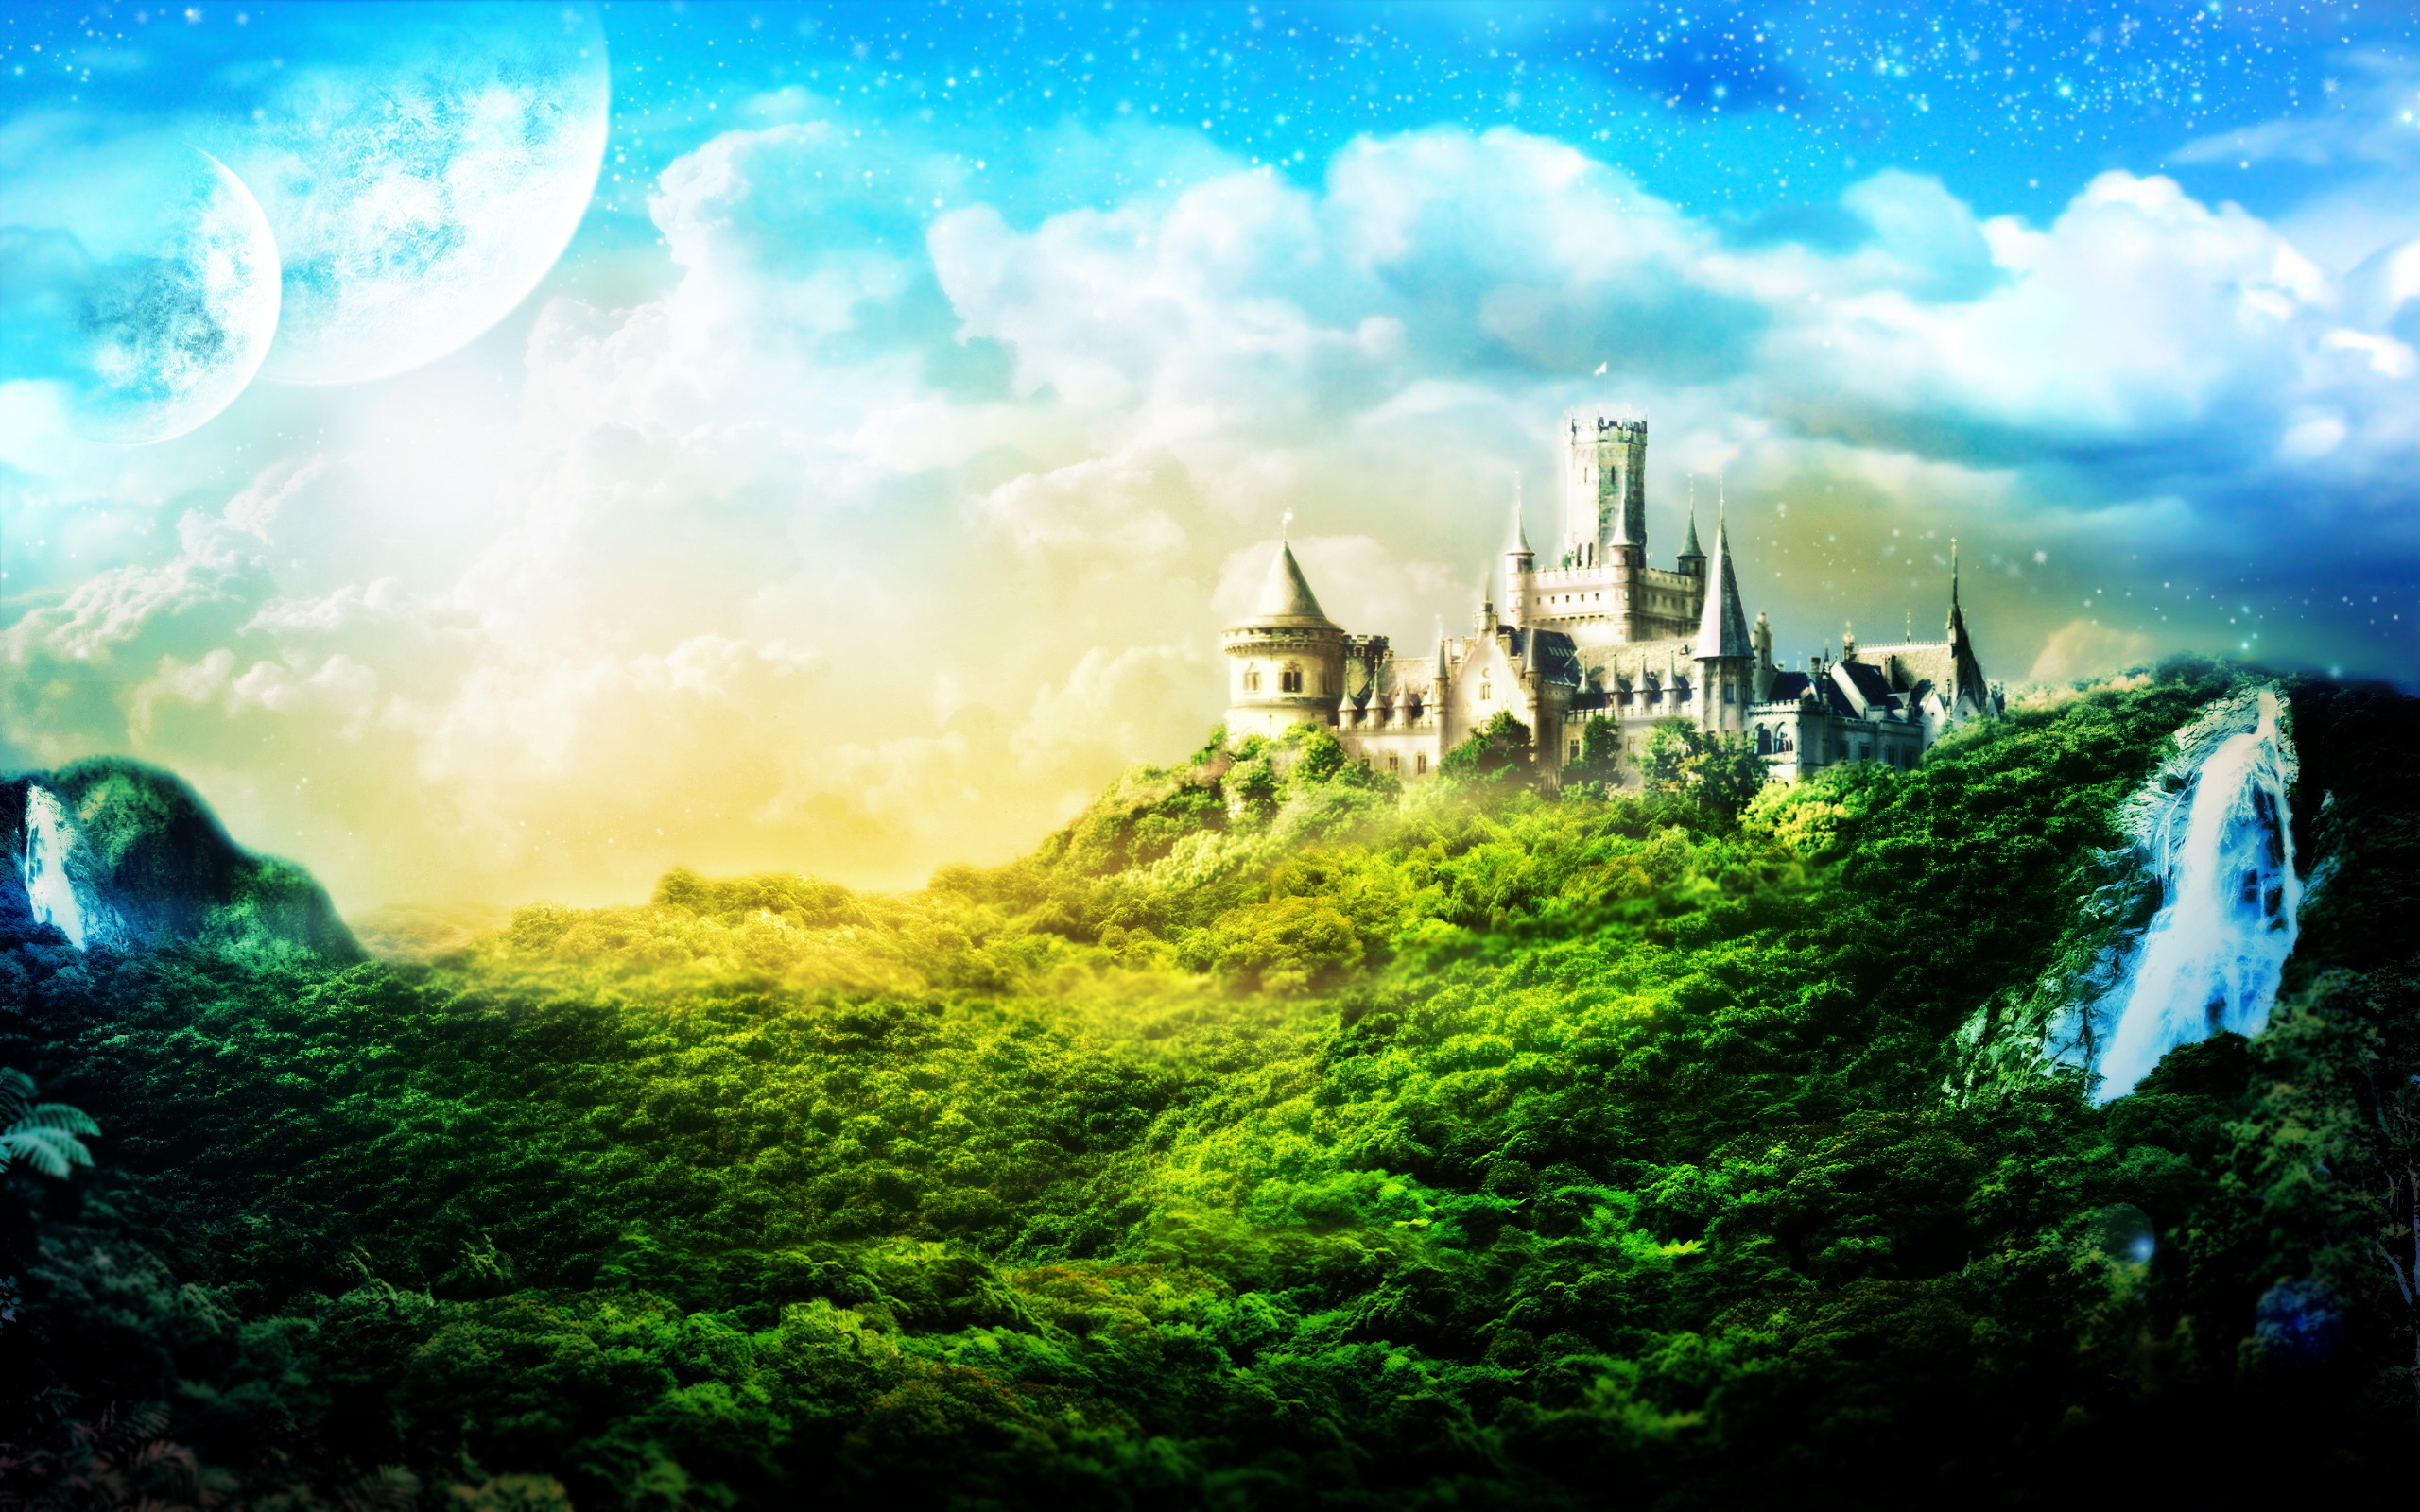 Fantasy castle desktop wallpaper by Alexander Osokin.